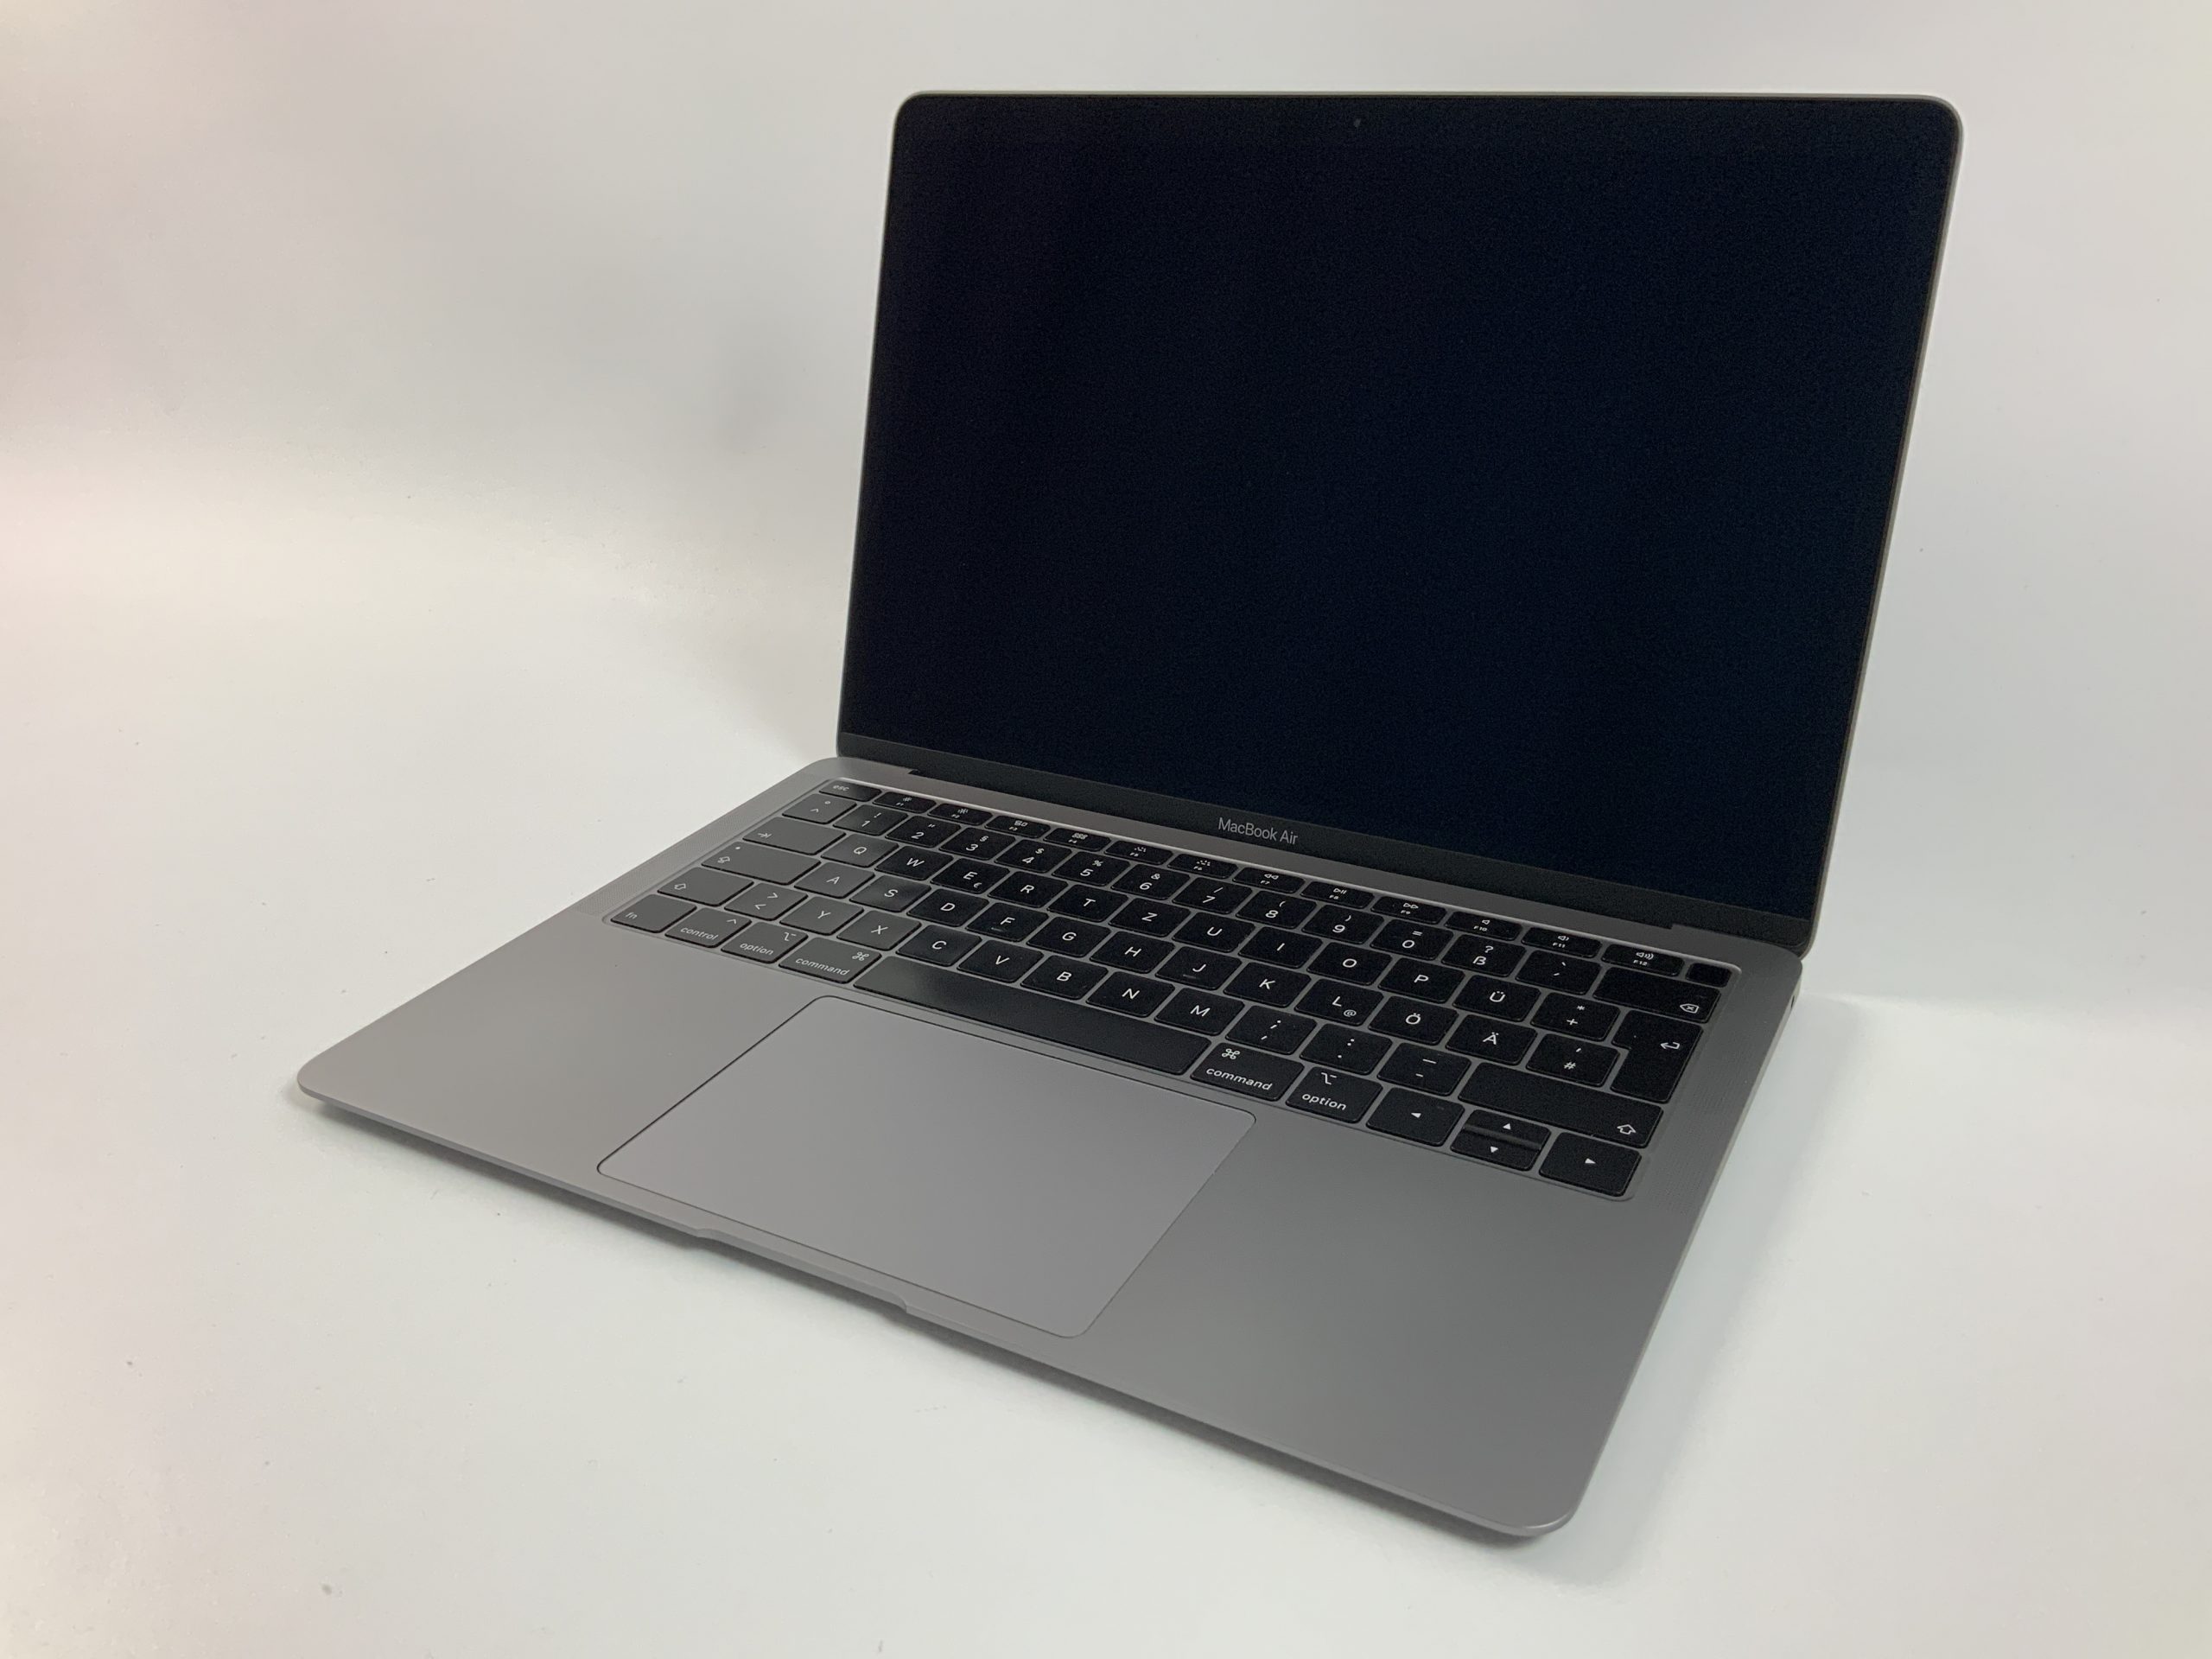 MacBook Air 13" Mid 2019 (Intel Core i5 1.6 GHz 8 GB RAM 512 GB SSD), Space Gray, Intel Core i5 1.6 GHz, 8 GB RAM, 512 GB SSD, imagen 1